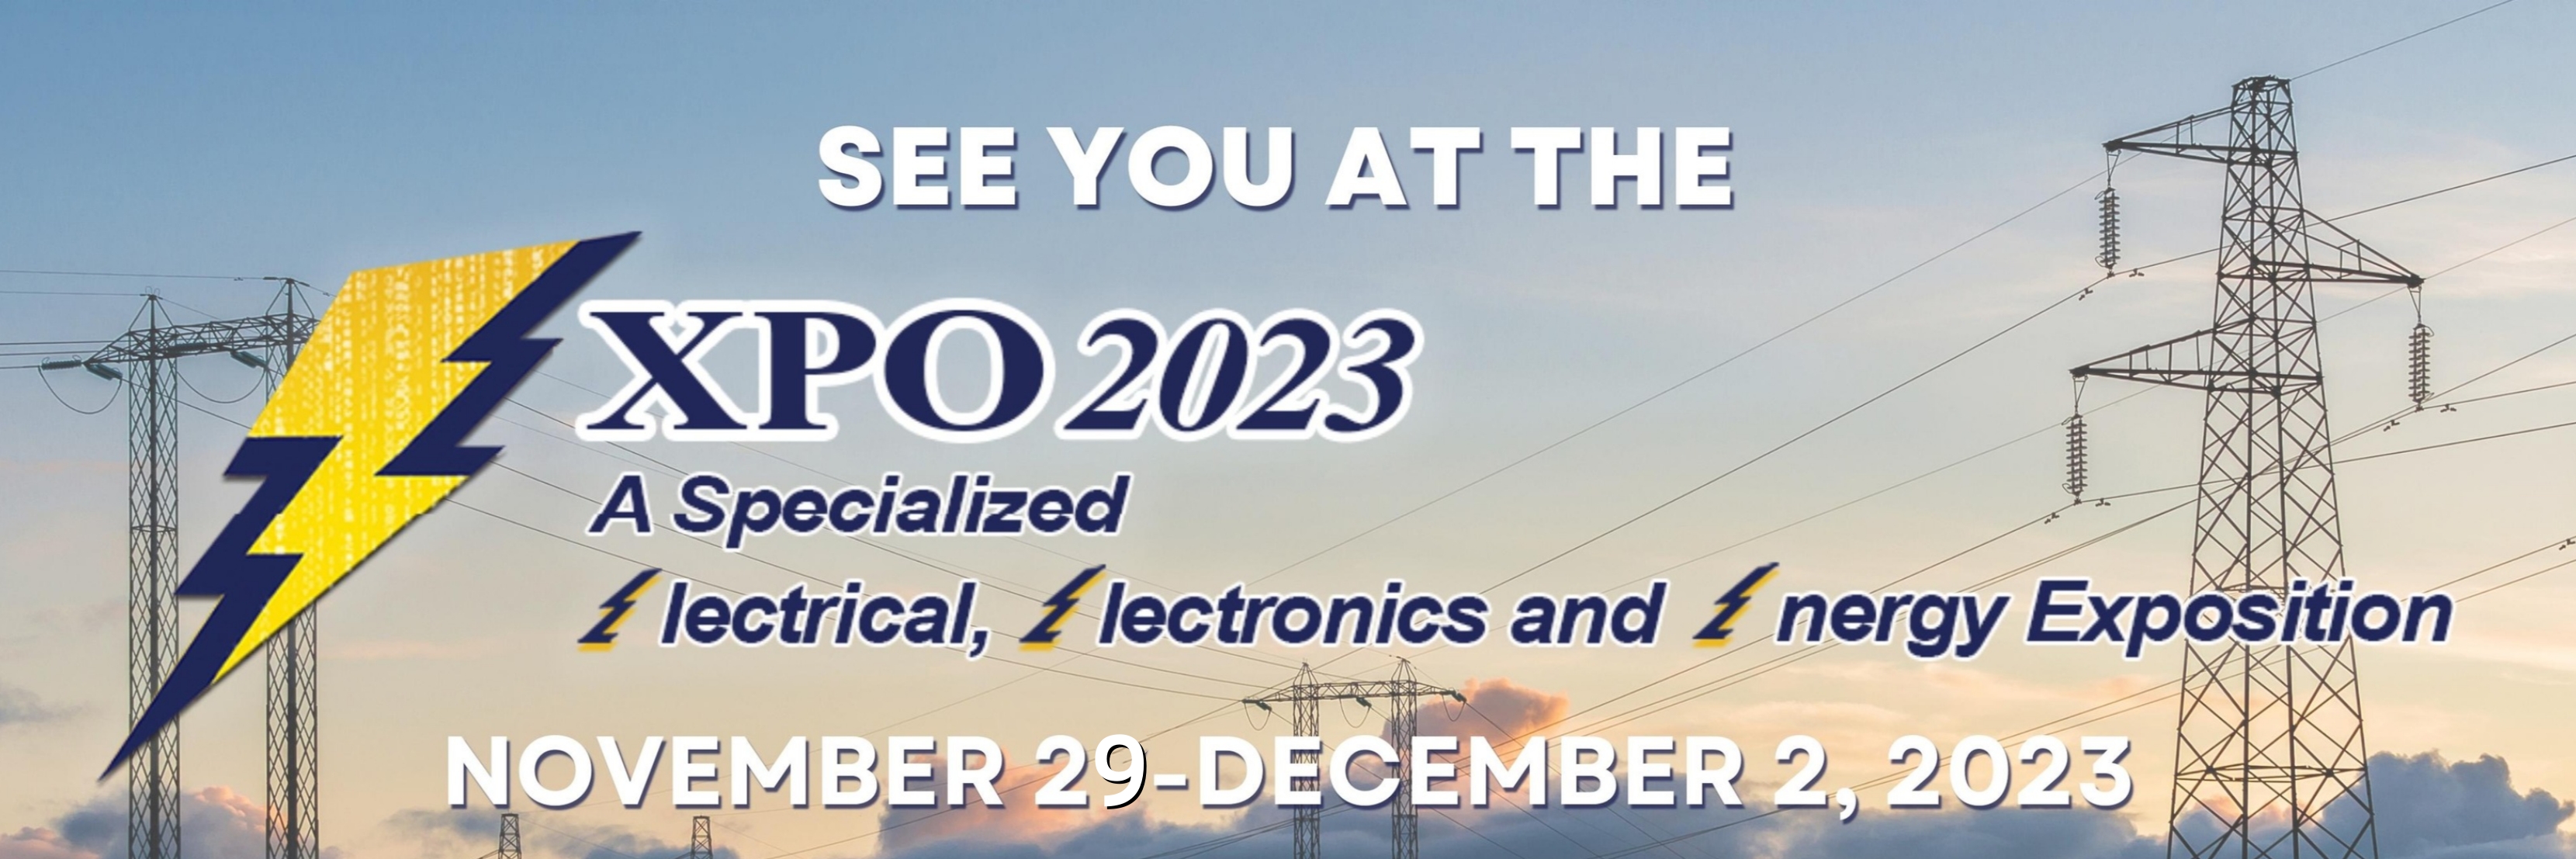 Invitation to 3E XPO 2023 in Manila, Philippines